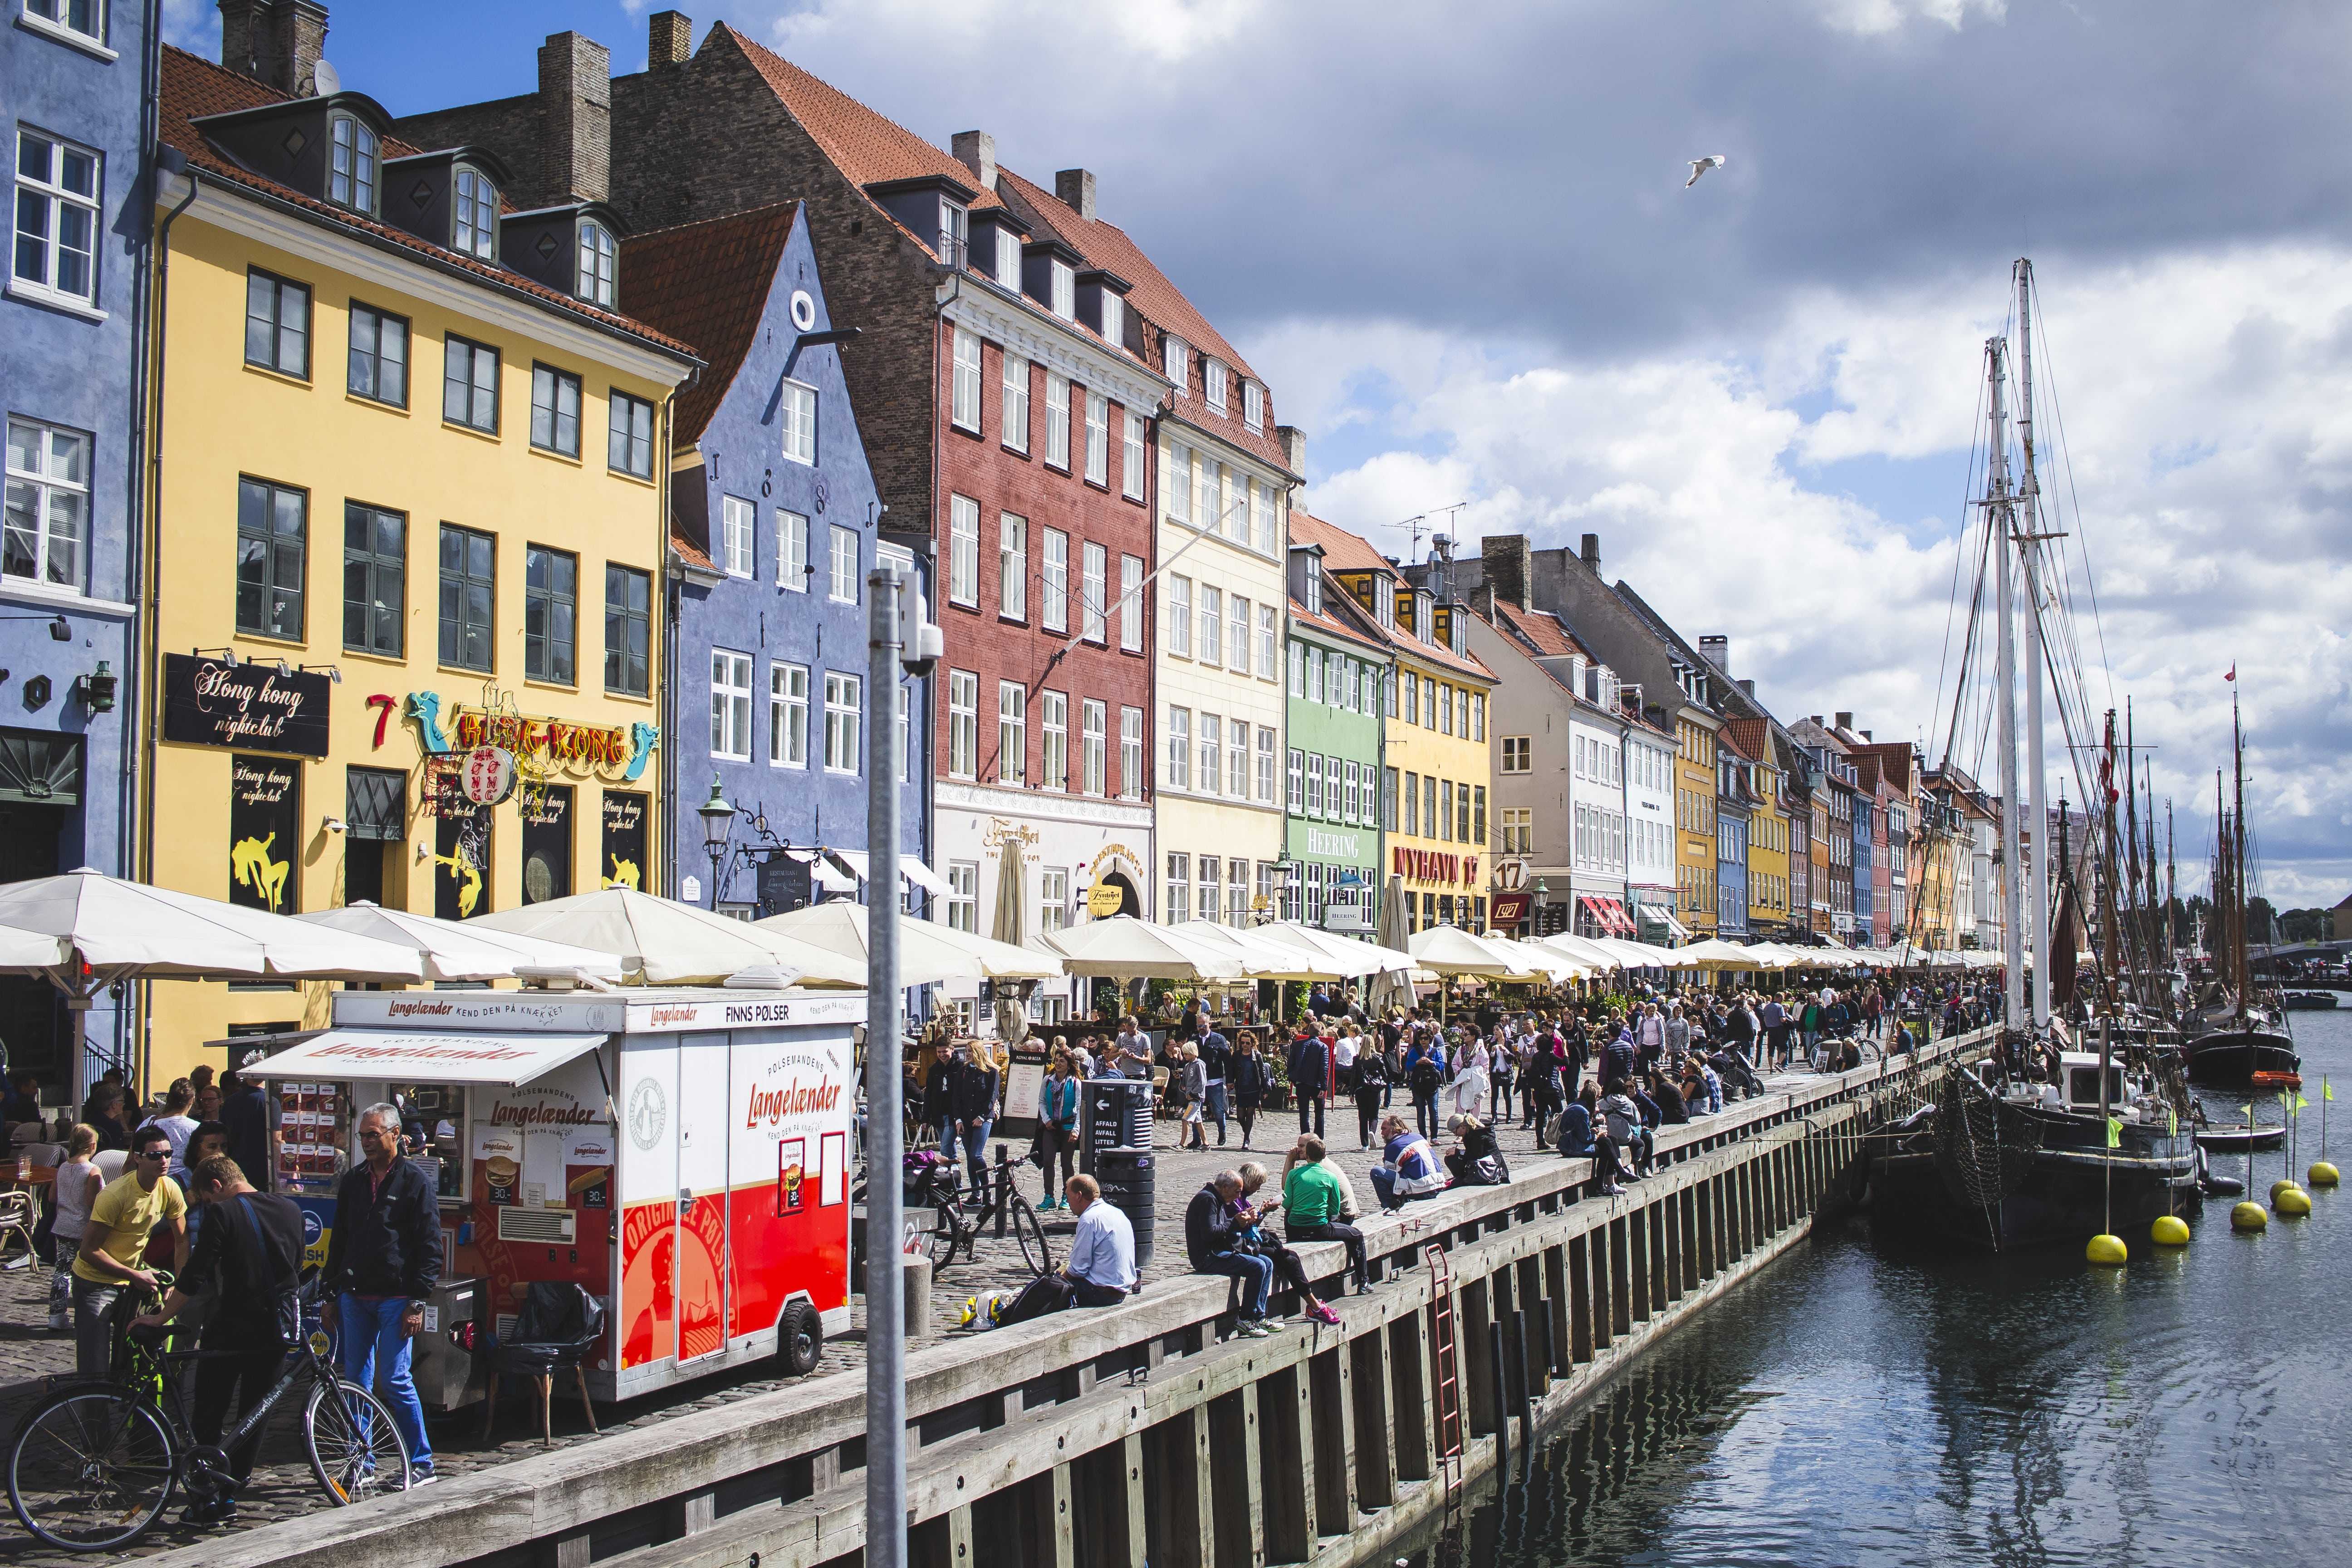 Tohle místo najdete jako první obrázek při vyhledávání Kodaně.